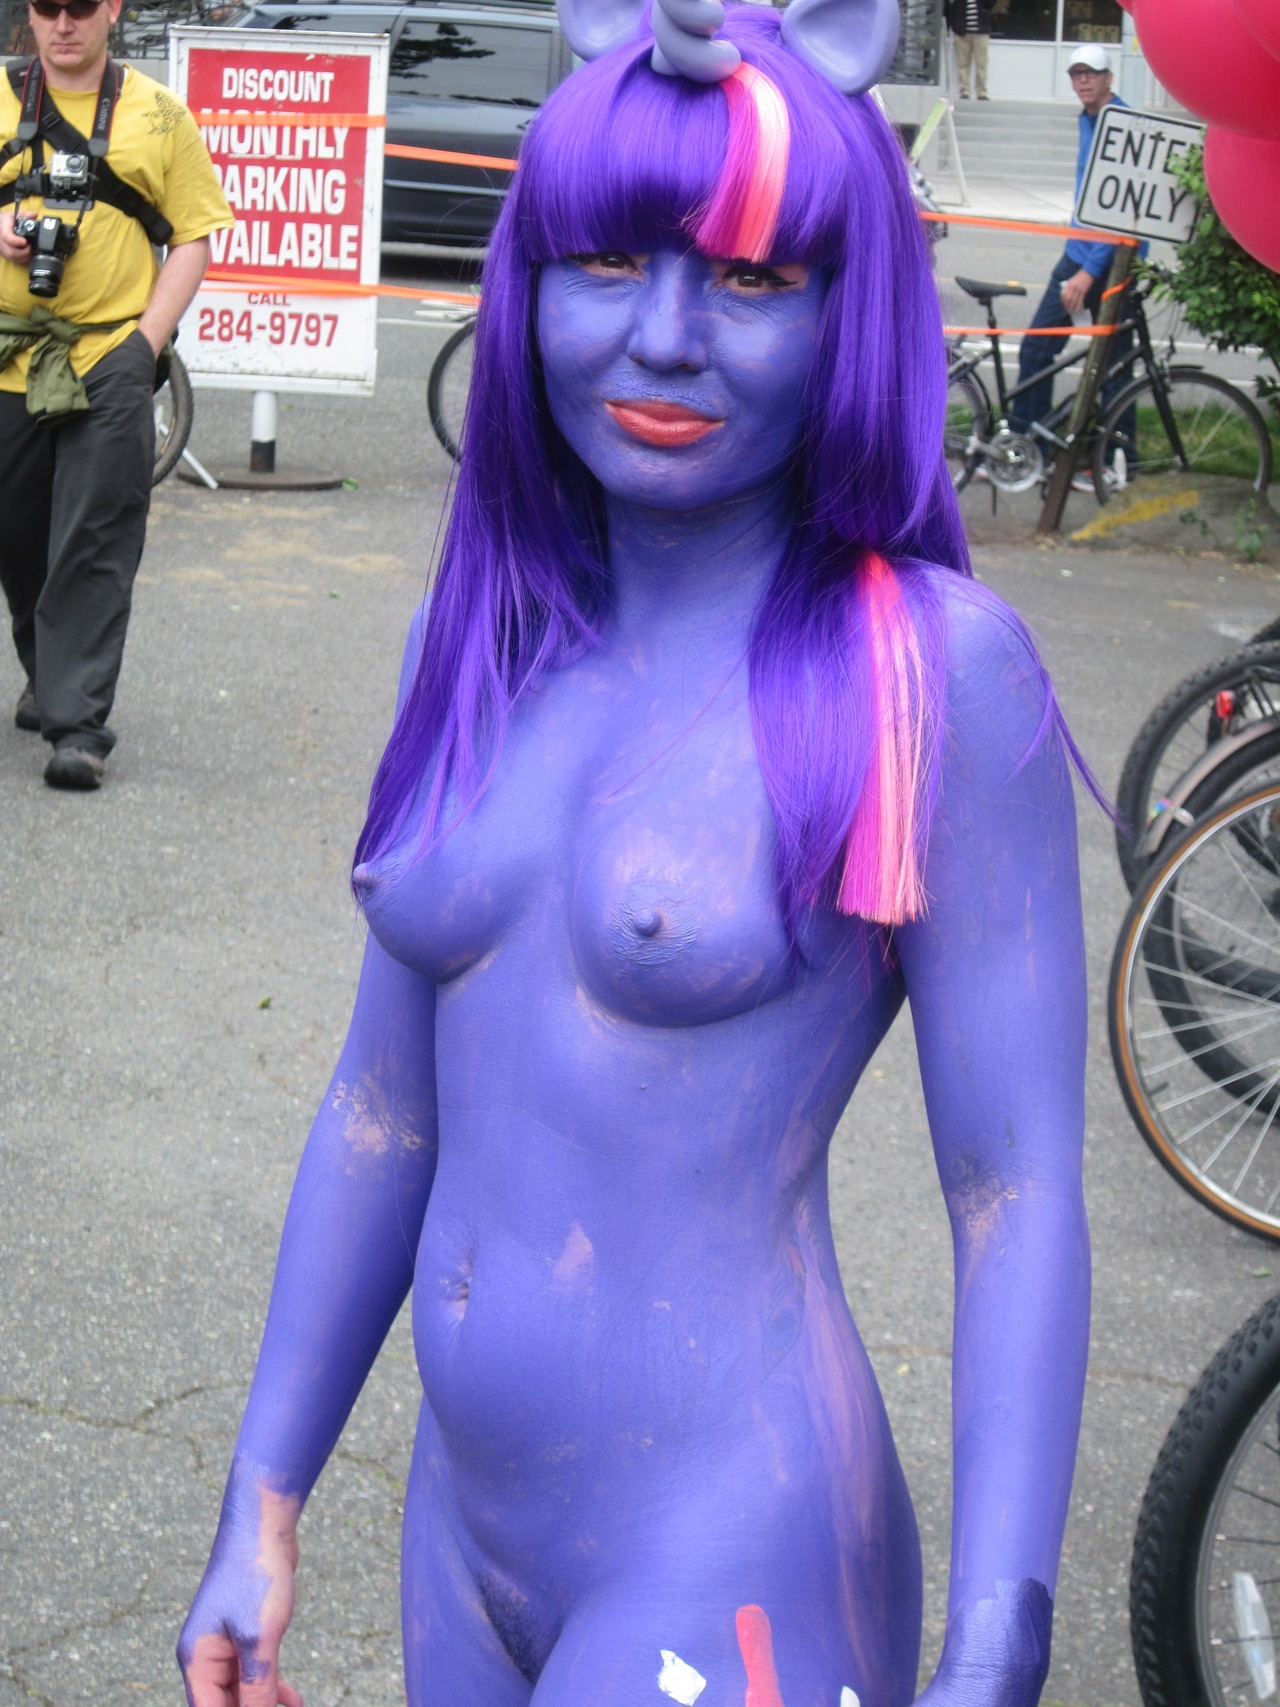 Nude women body paint public